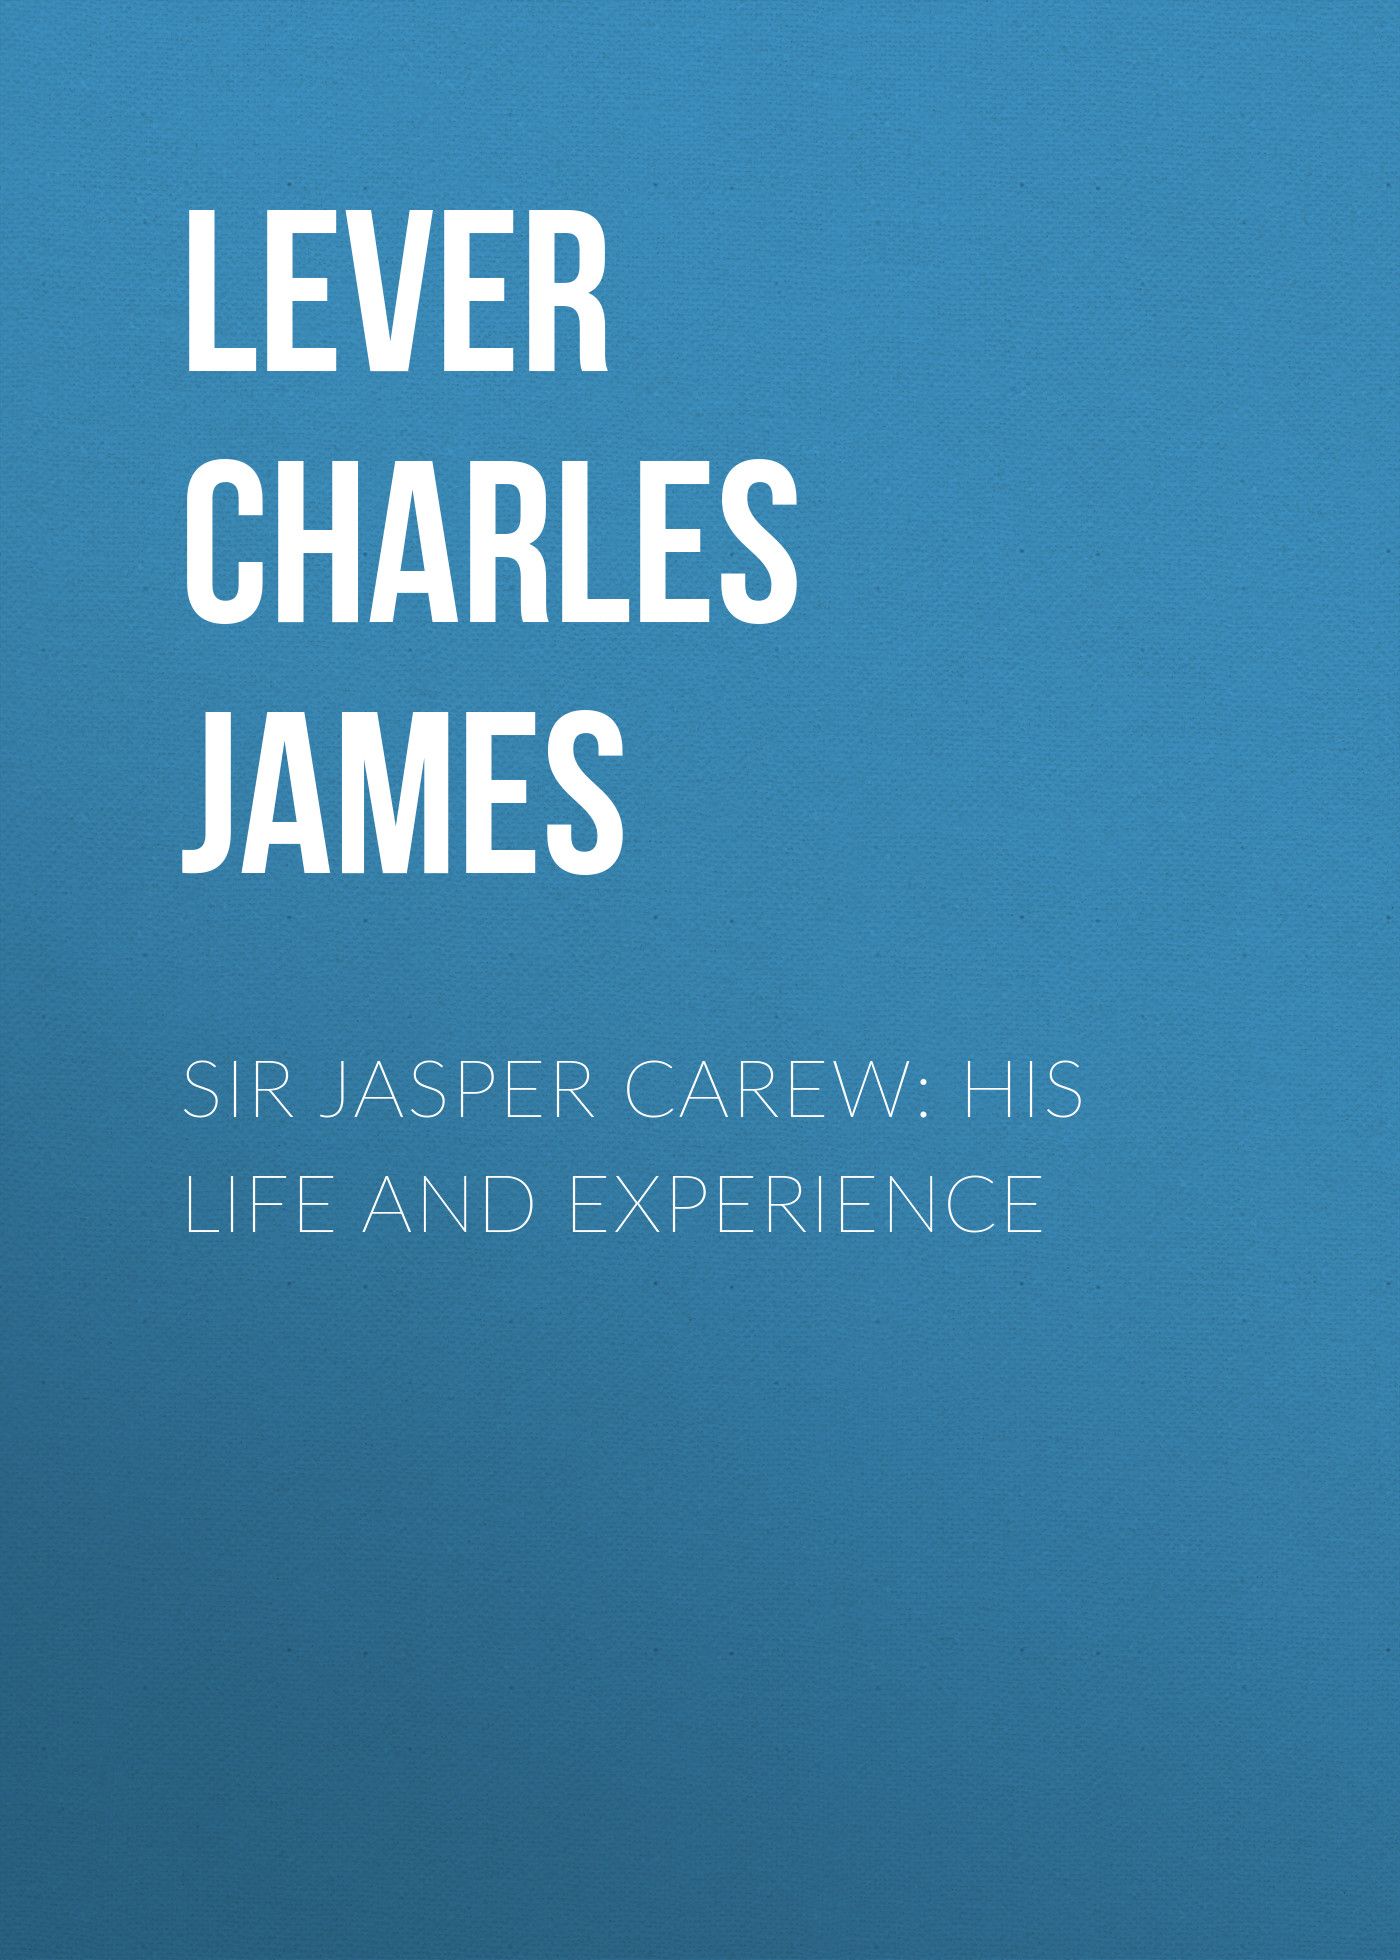 Книга Sir Jasper Carew: His Life and Experience из серии , созданная Charles Lever, может относится к жанру Литература 19 века, Зарубежная старинная литература, Зарубежная классика. Стоимость электронной книги Sir Jasper Carew: His Life and Experience с идентификатором 25448348 составляет 0 руб.